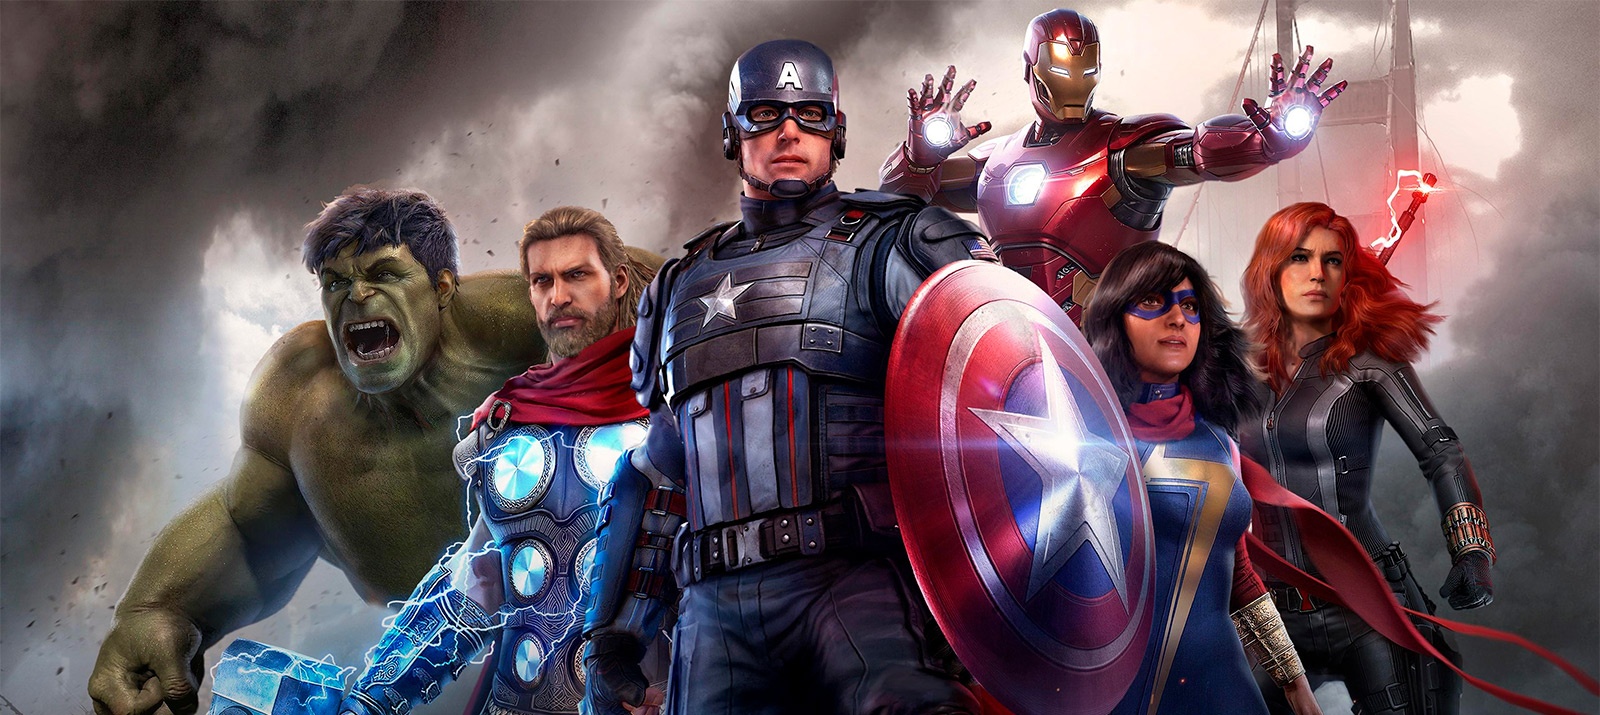 Chi non vorrebbe unirsi agli Avengers? Recensione del gioco "Marvel's Avengers"